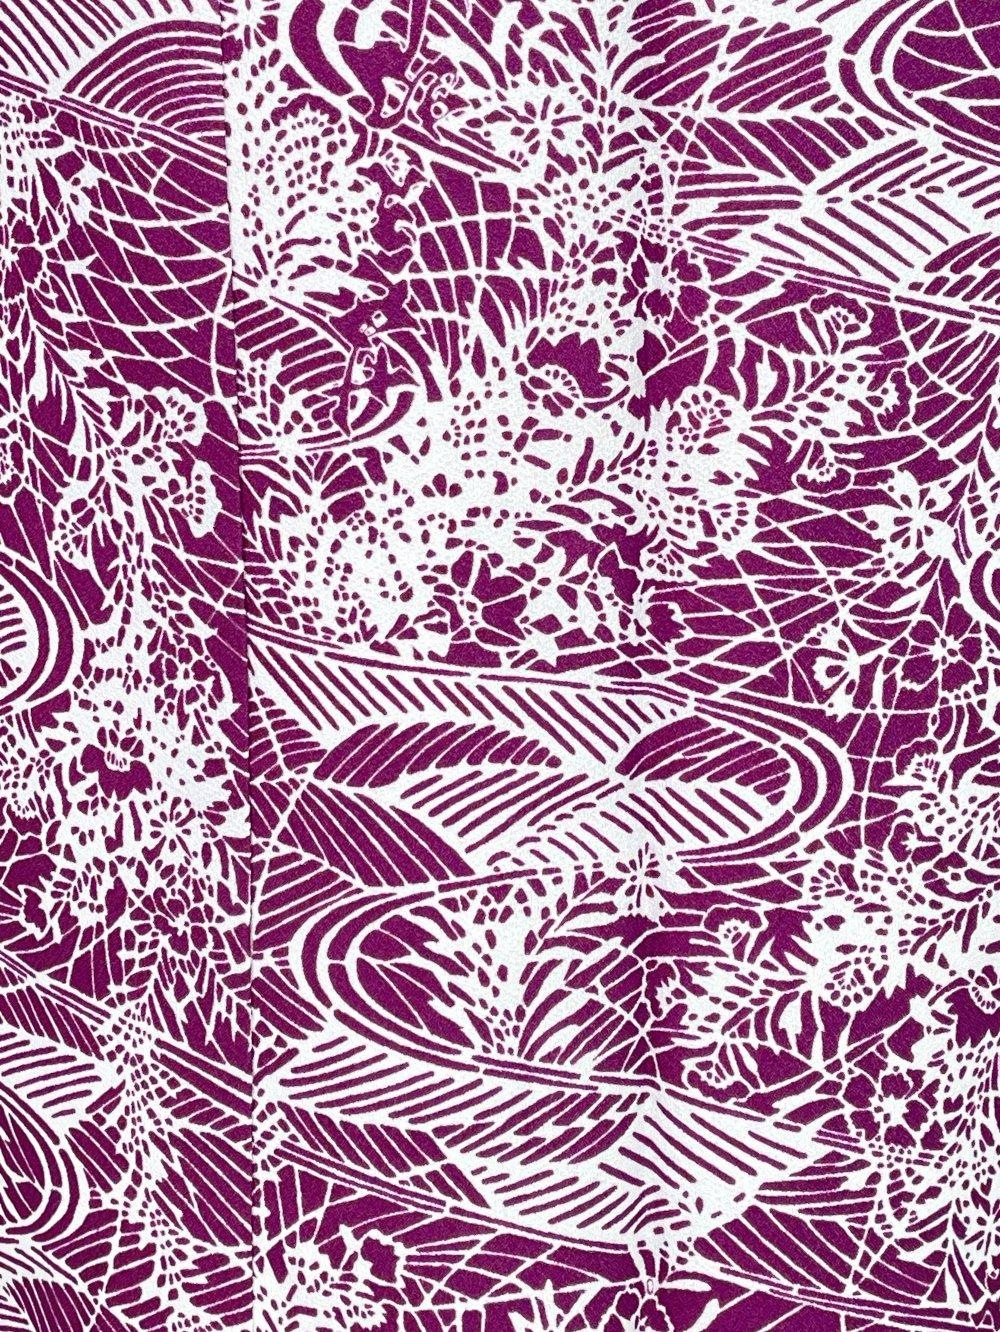 二部式着物(ゴムスカート) 袷 流水 紫画像